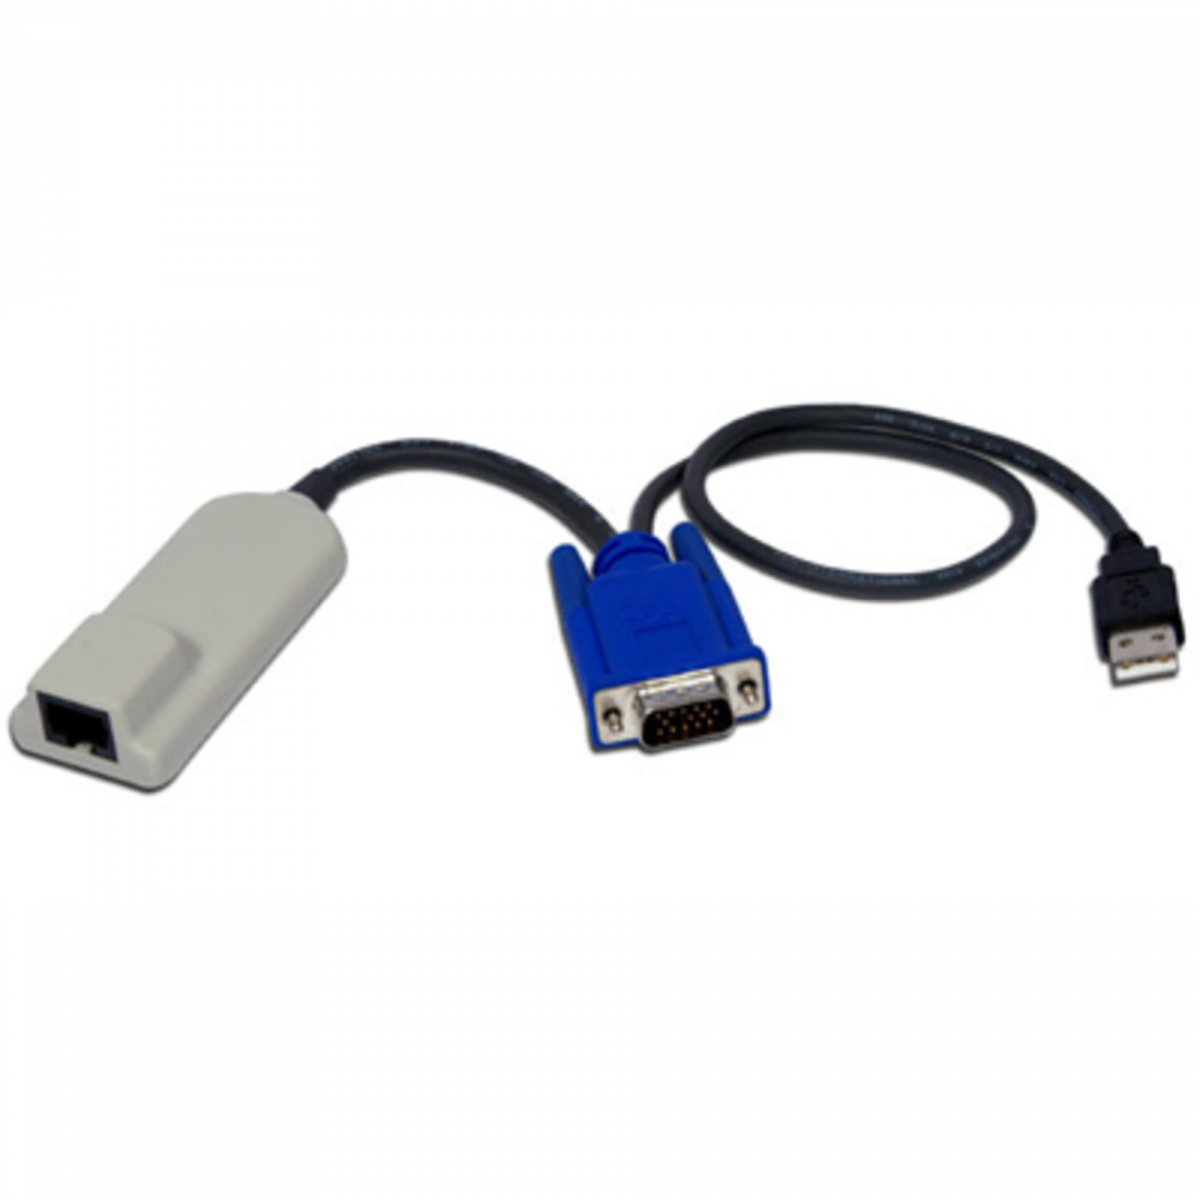 Адаптер для подключения серверов к KVM Avocent, с USB клавиатурой, мышью и VGA монитором.